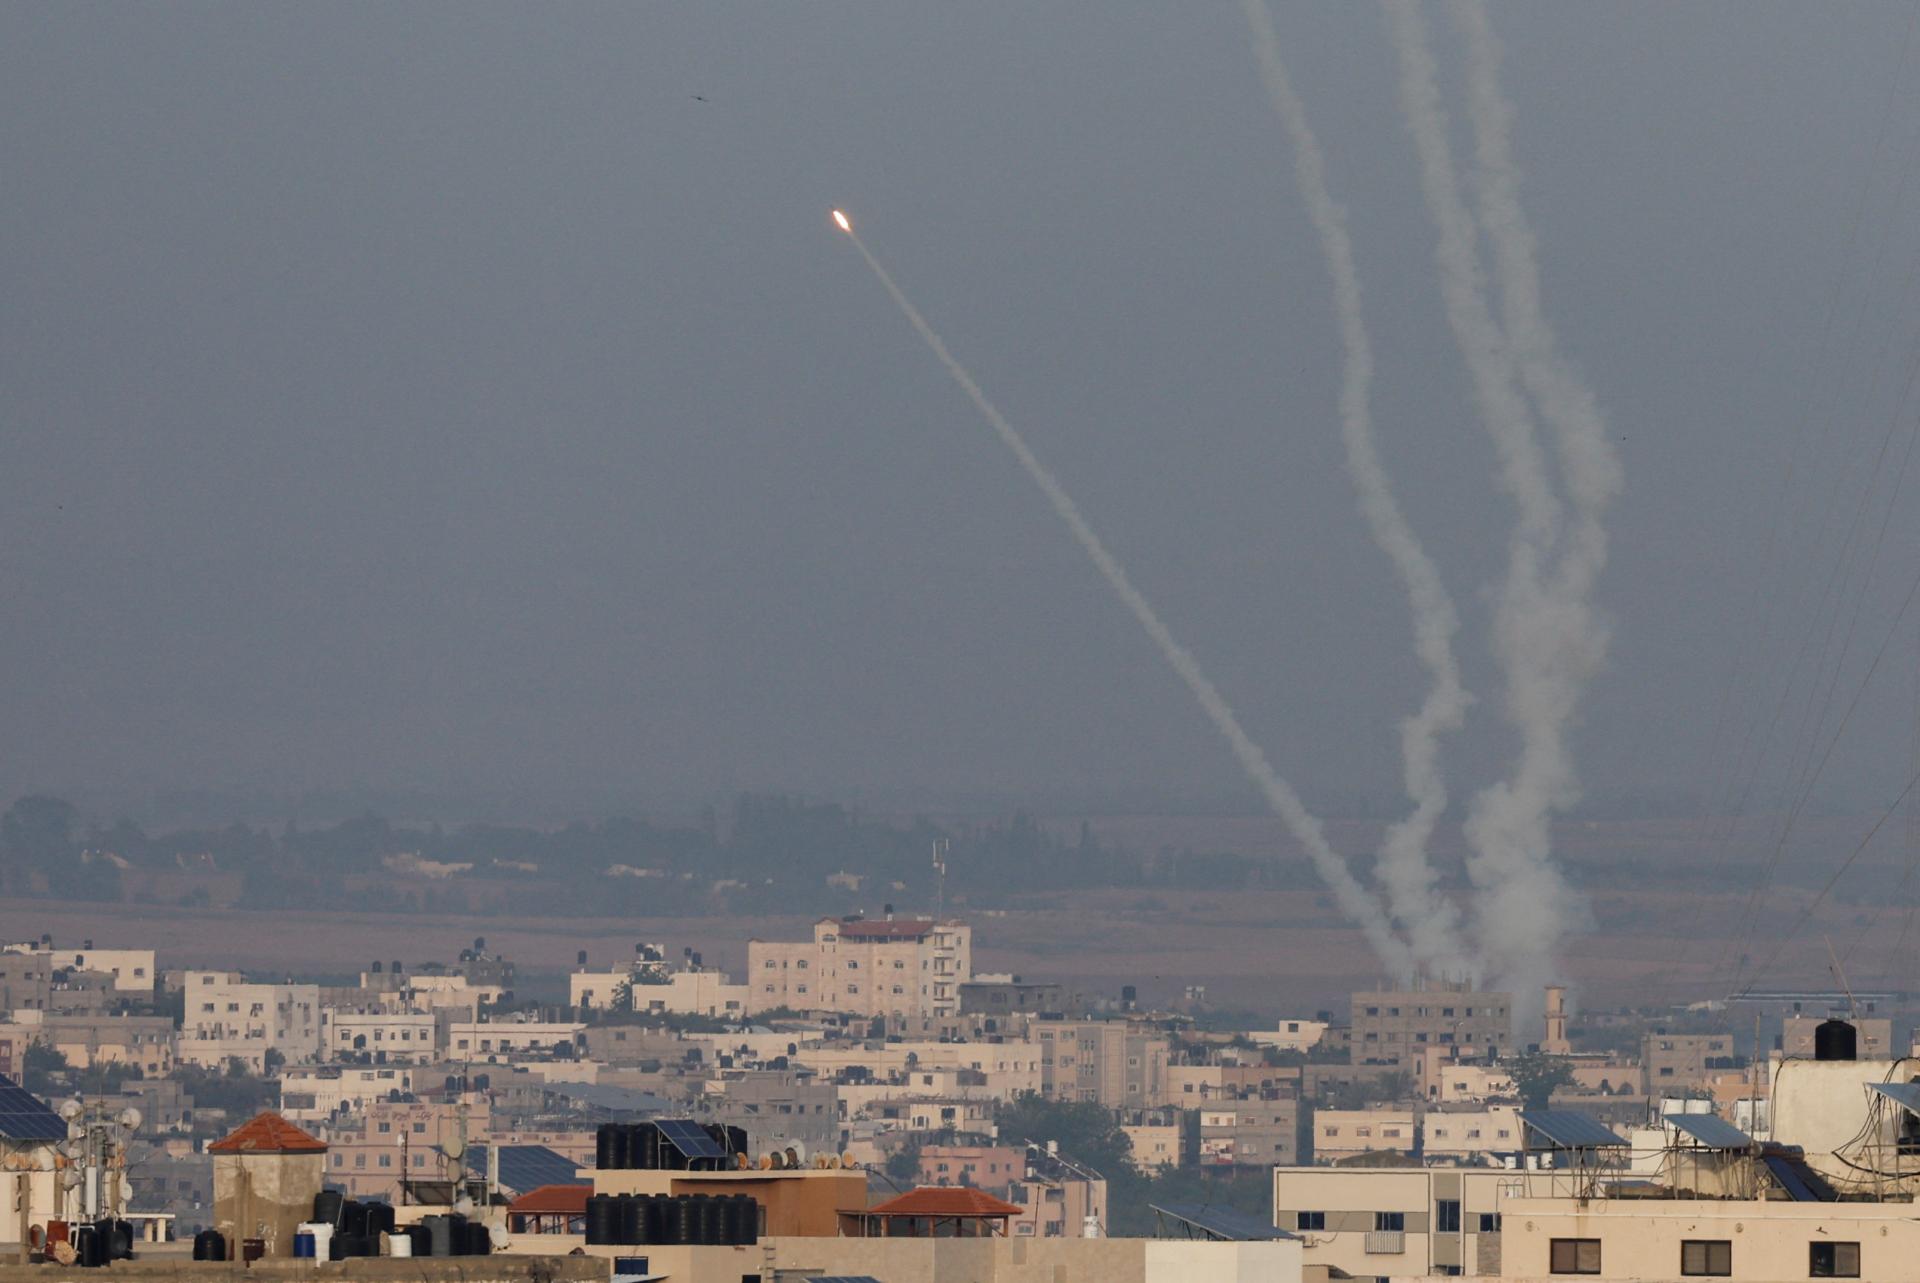 Une roquette palestinienne a touché une maison près de Tel-Aviv, une personne est morte